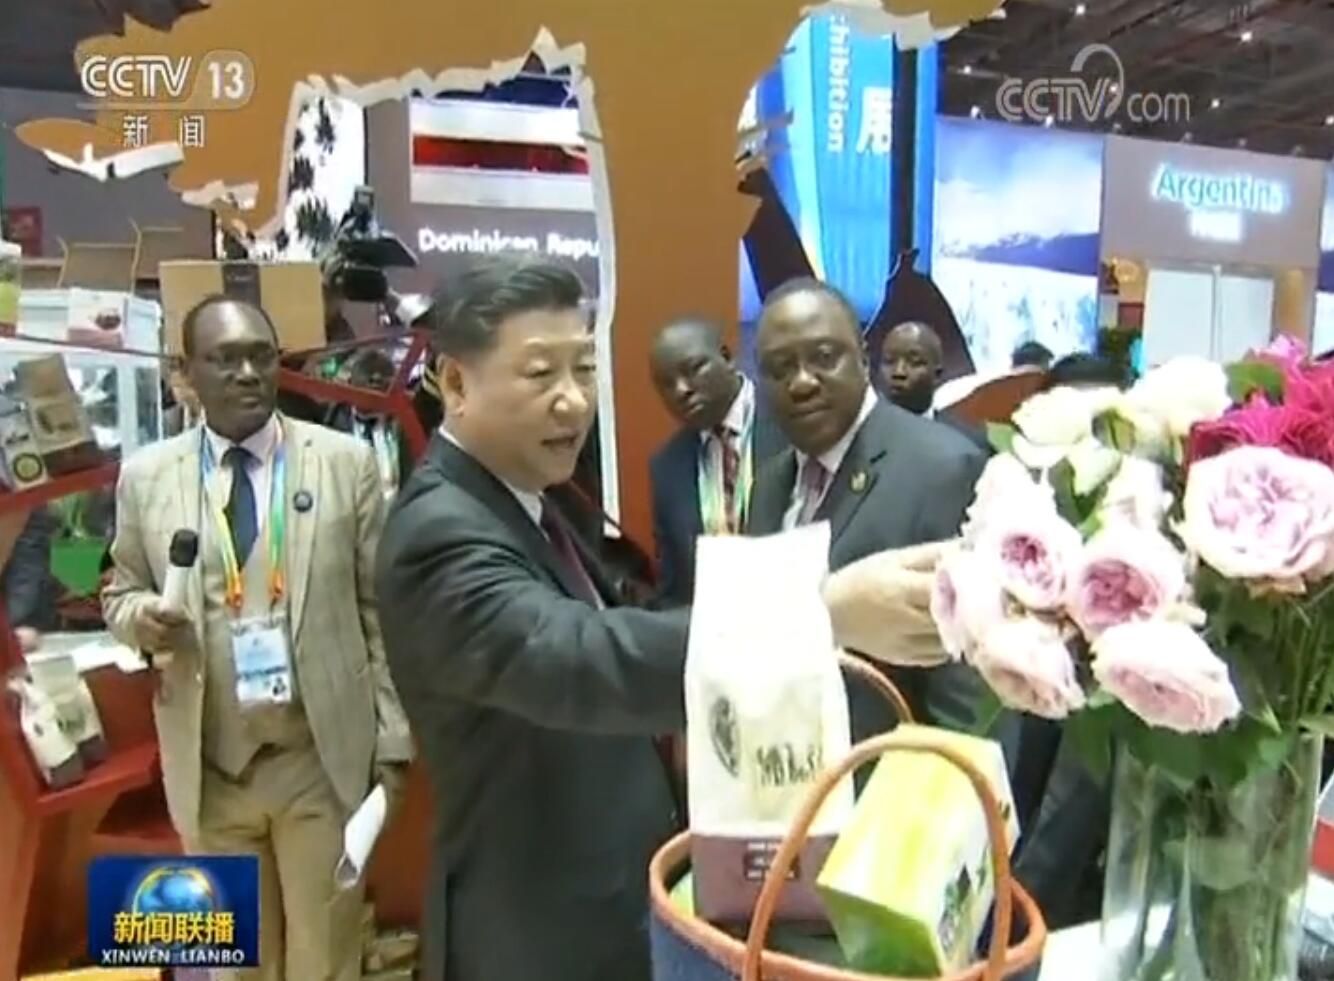 习近平同出席首届中国国际进口博览会的外国领导人共同巡馆